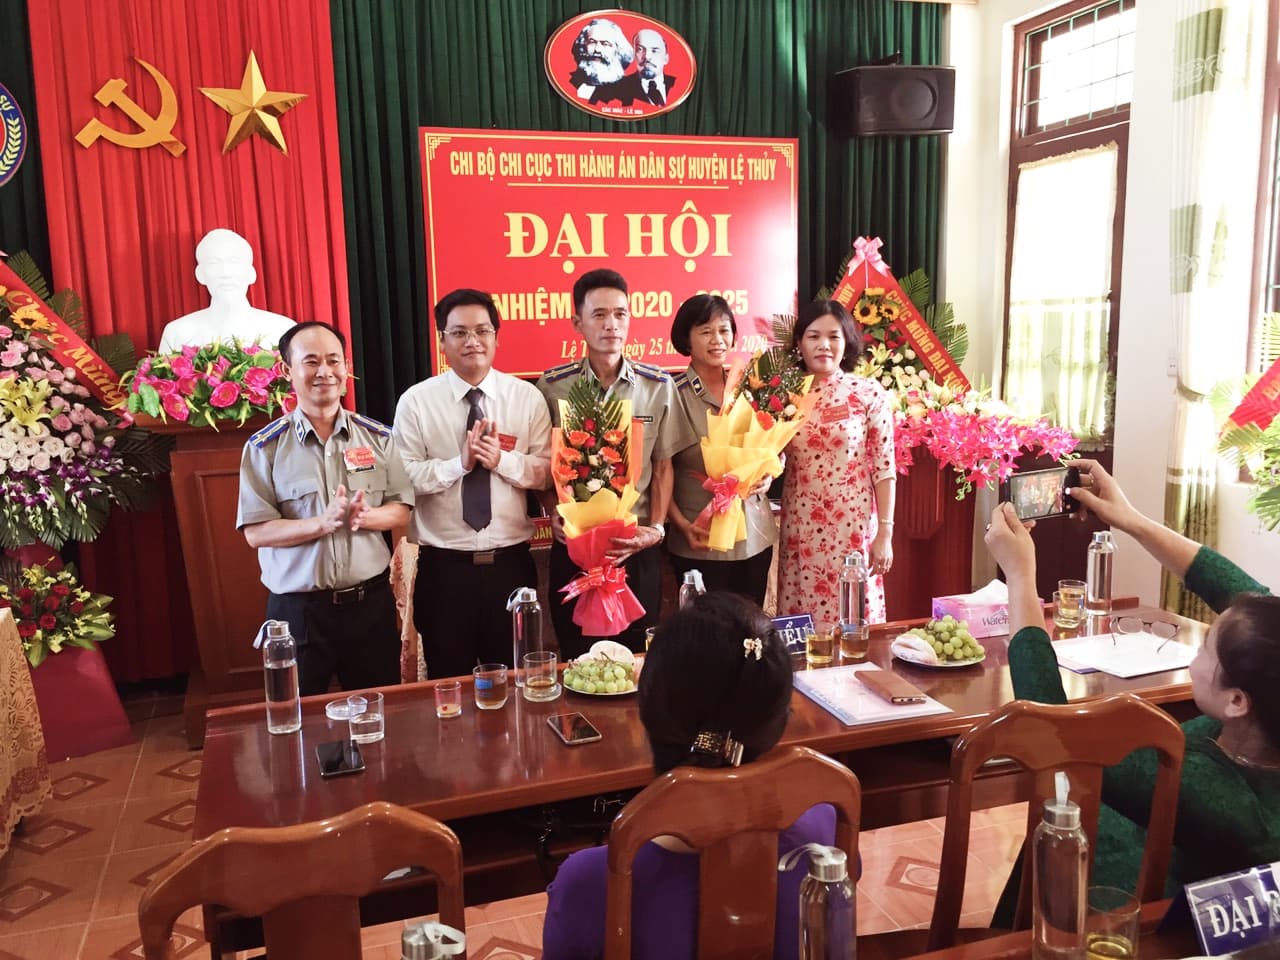 Chi bộ Chi cục Thi hành án dân sự huyện Lệ Thủy, tỉnh Quảng Bình đã tố chức Đại hội Chi bộ nhiệm kỳ 2020- 2025